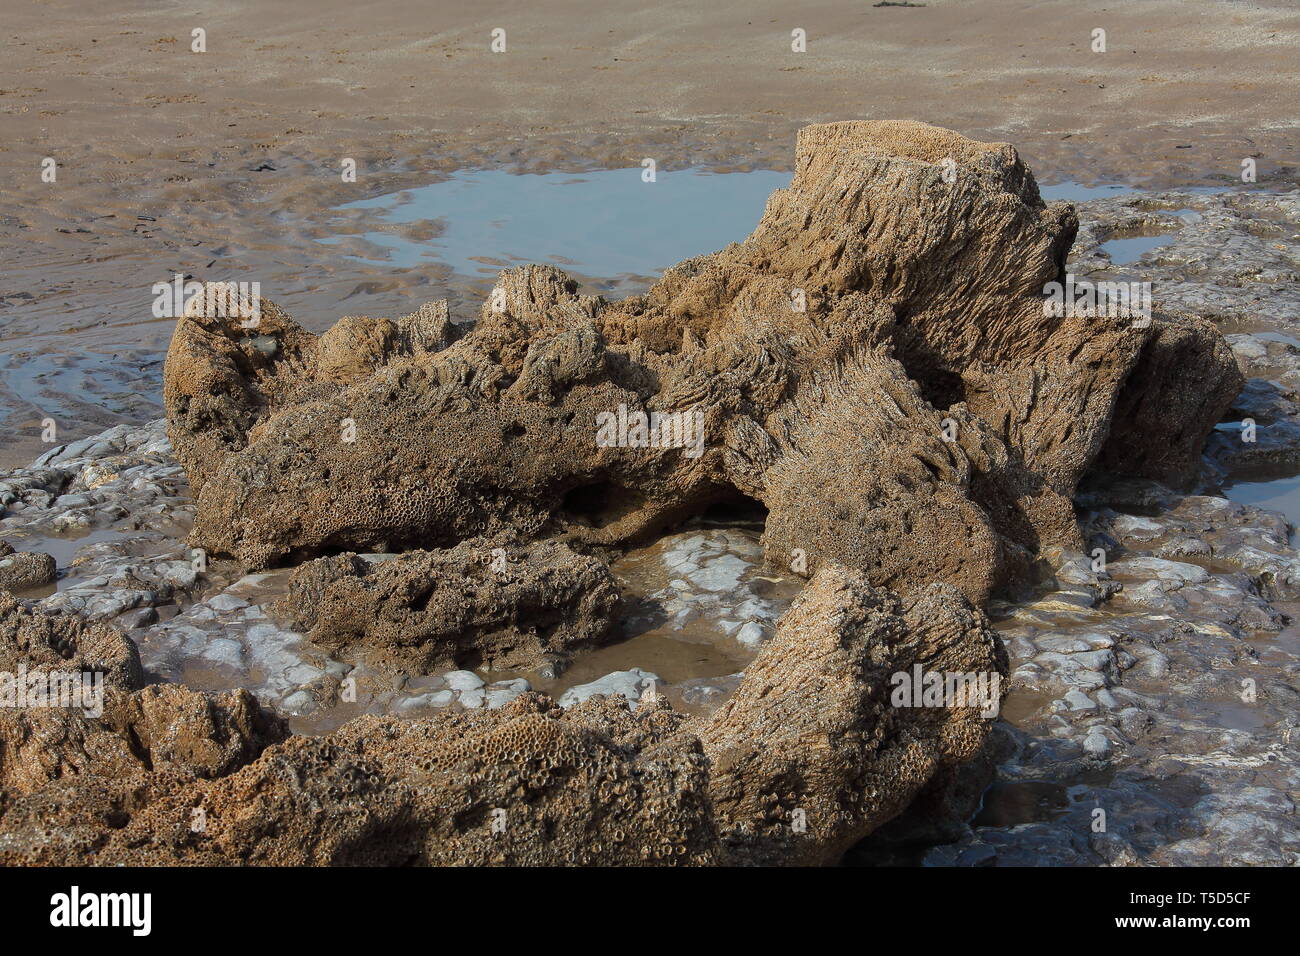 Ein Felsen, von einem kleinen Felsen am Strand und komplett mit Seepocken, die eine universelle Braun sludgy sehen fast wie ein Korallenriff. Stockfoto